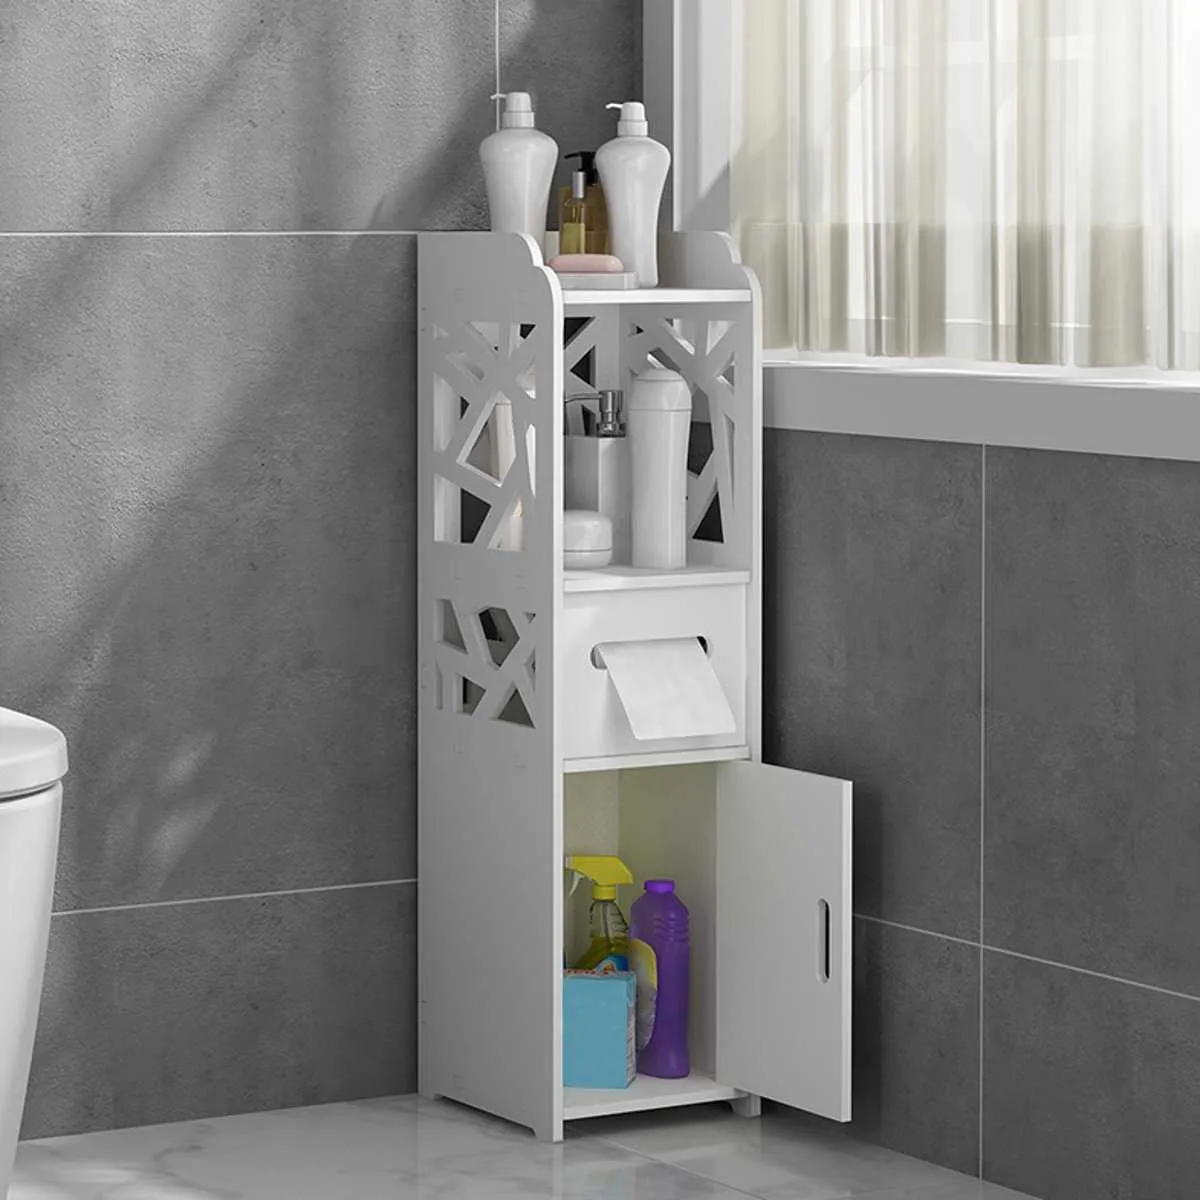 Kleiner Badezimmer-Aufbewahrungs-Eckbodenschrank mit Türen und Regalen, dünner Toiletten-Waschtischschrank, schmaler Bad-Waschbecken-Organizer 210705